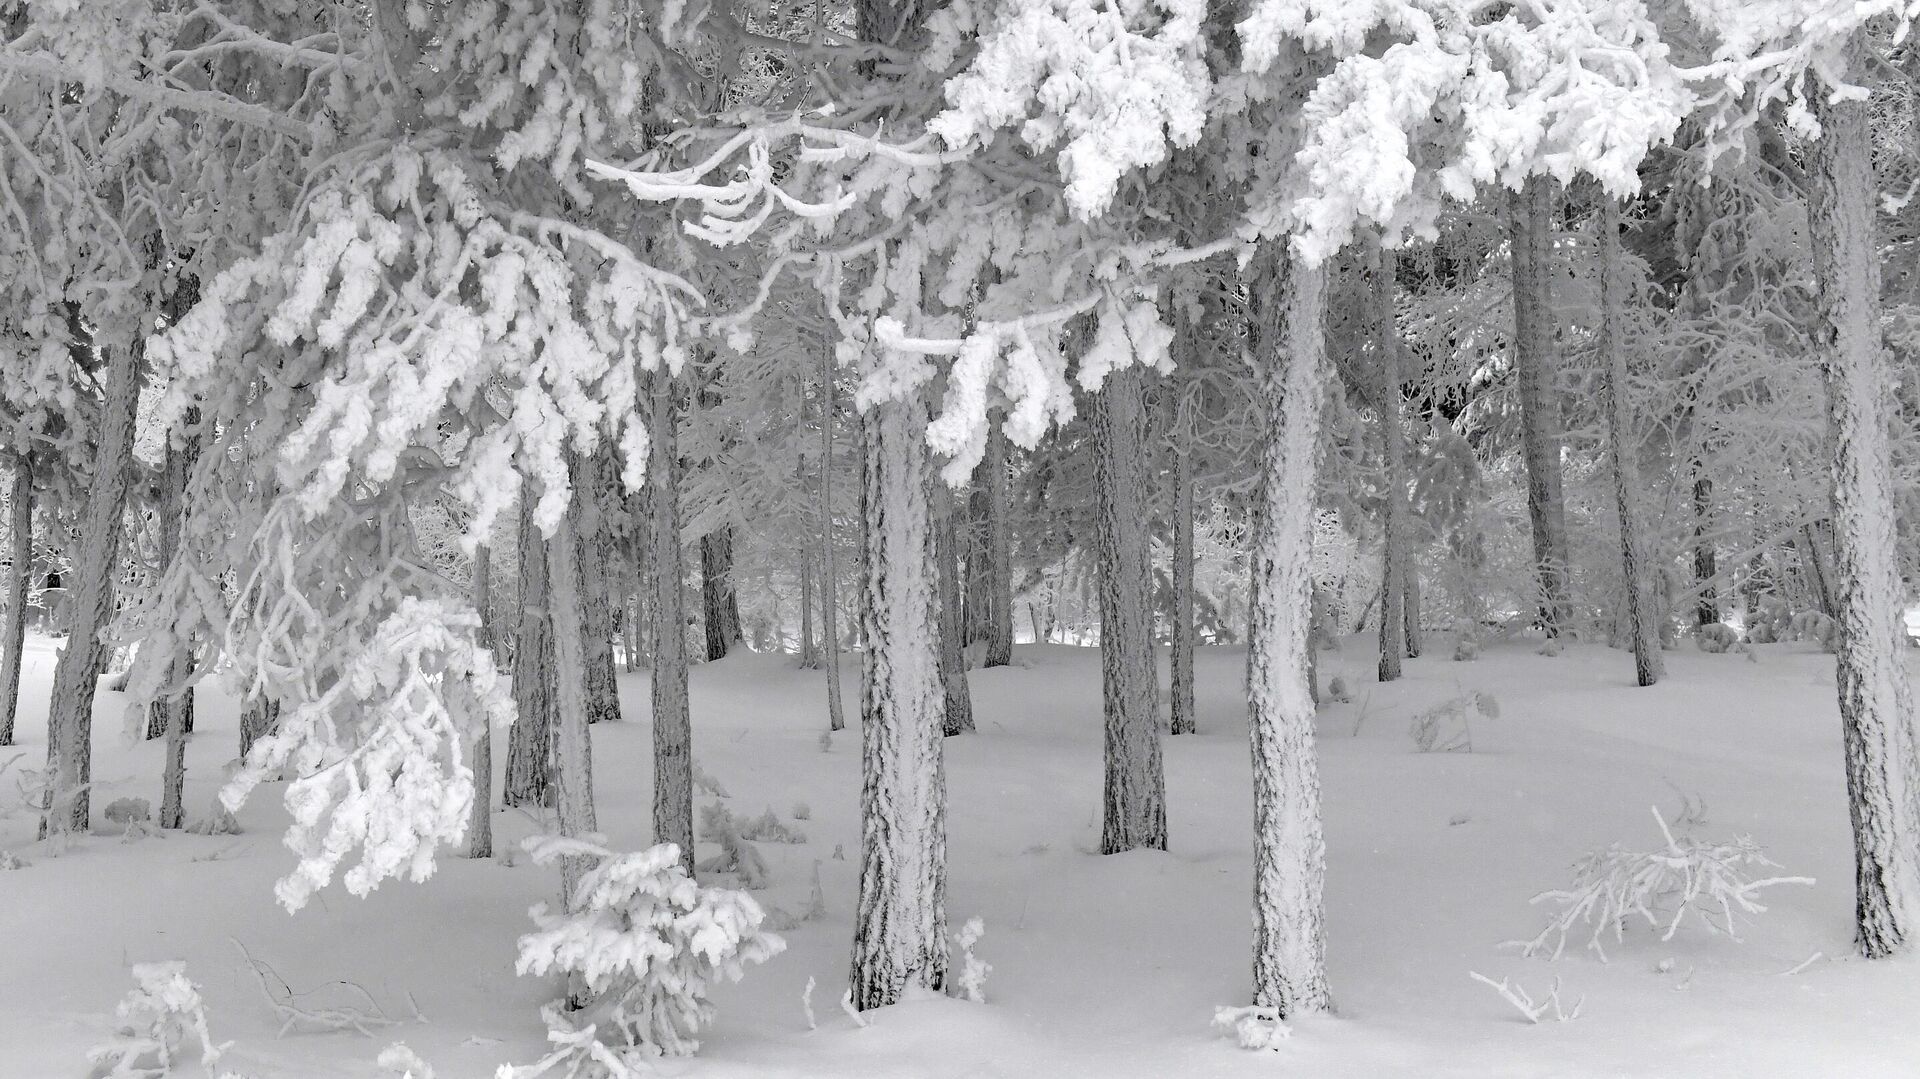 Фф и в морозном лесу я навеки. Лес покрытый снегом. Аномальные Морозы в январе 2017. Покрыто снегом синонимы. Красноярцы в сугробе на Столбах в Мороз.